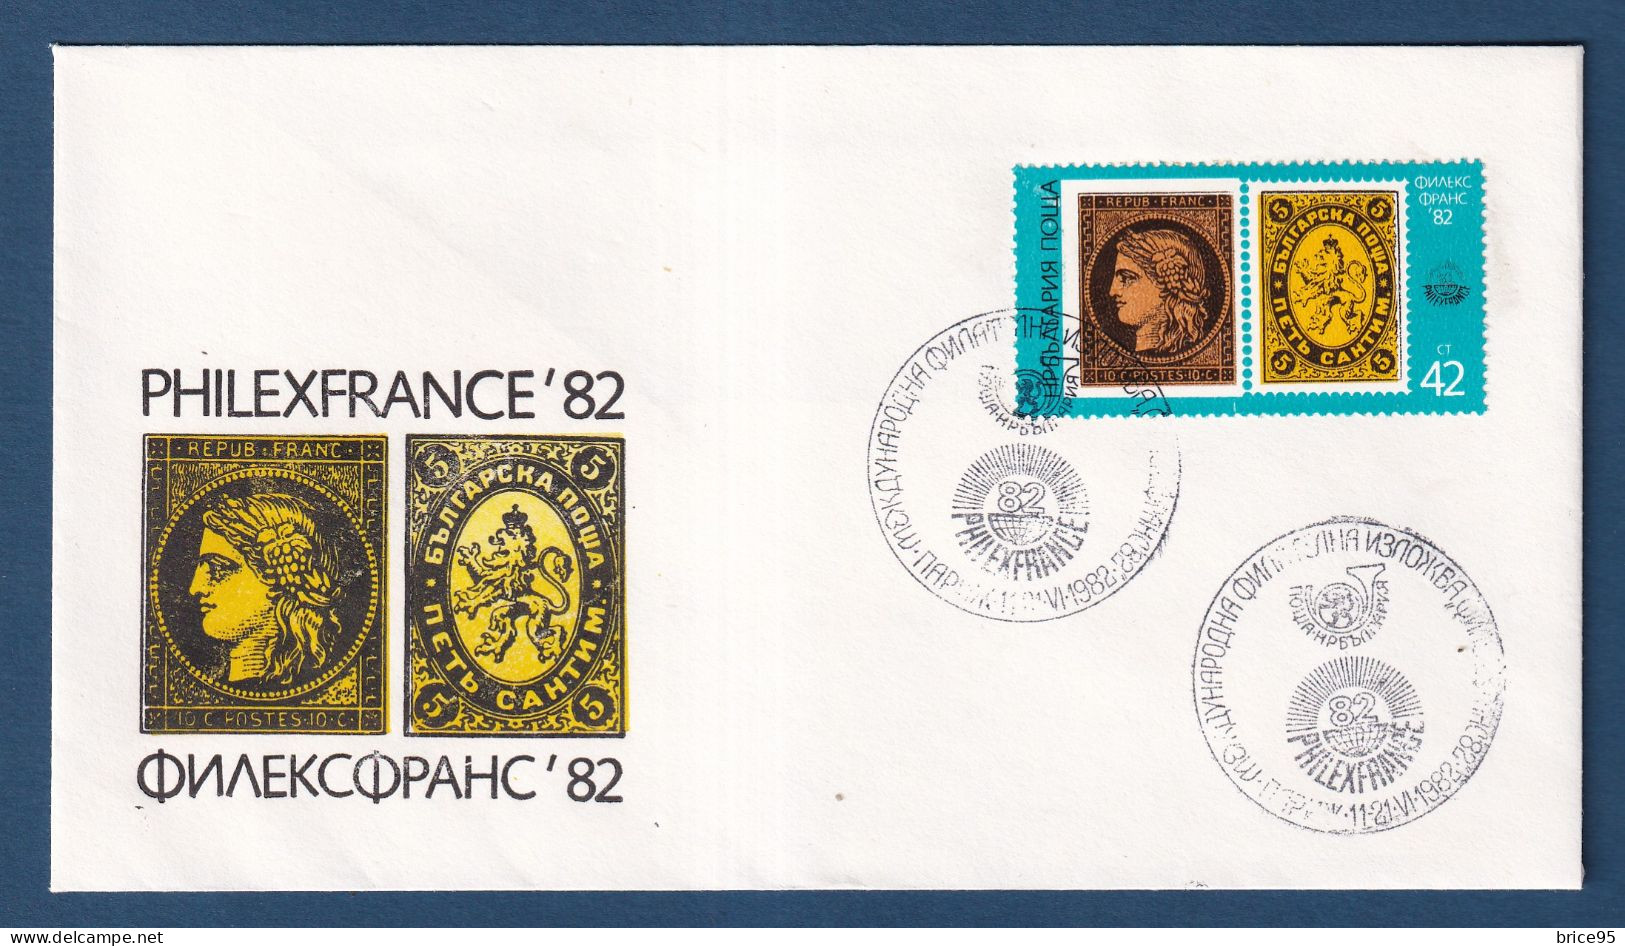 Ukraine - FDC - Premier Jour - Entier Postal - PhilexFrance 82 - 1982 - Ucrania